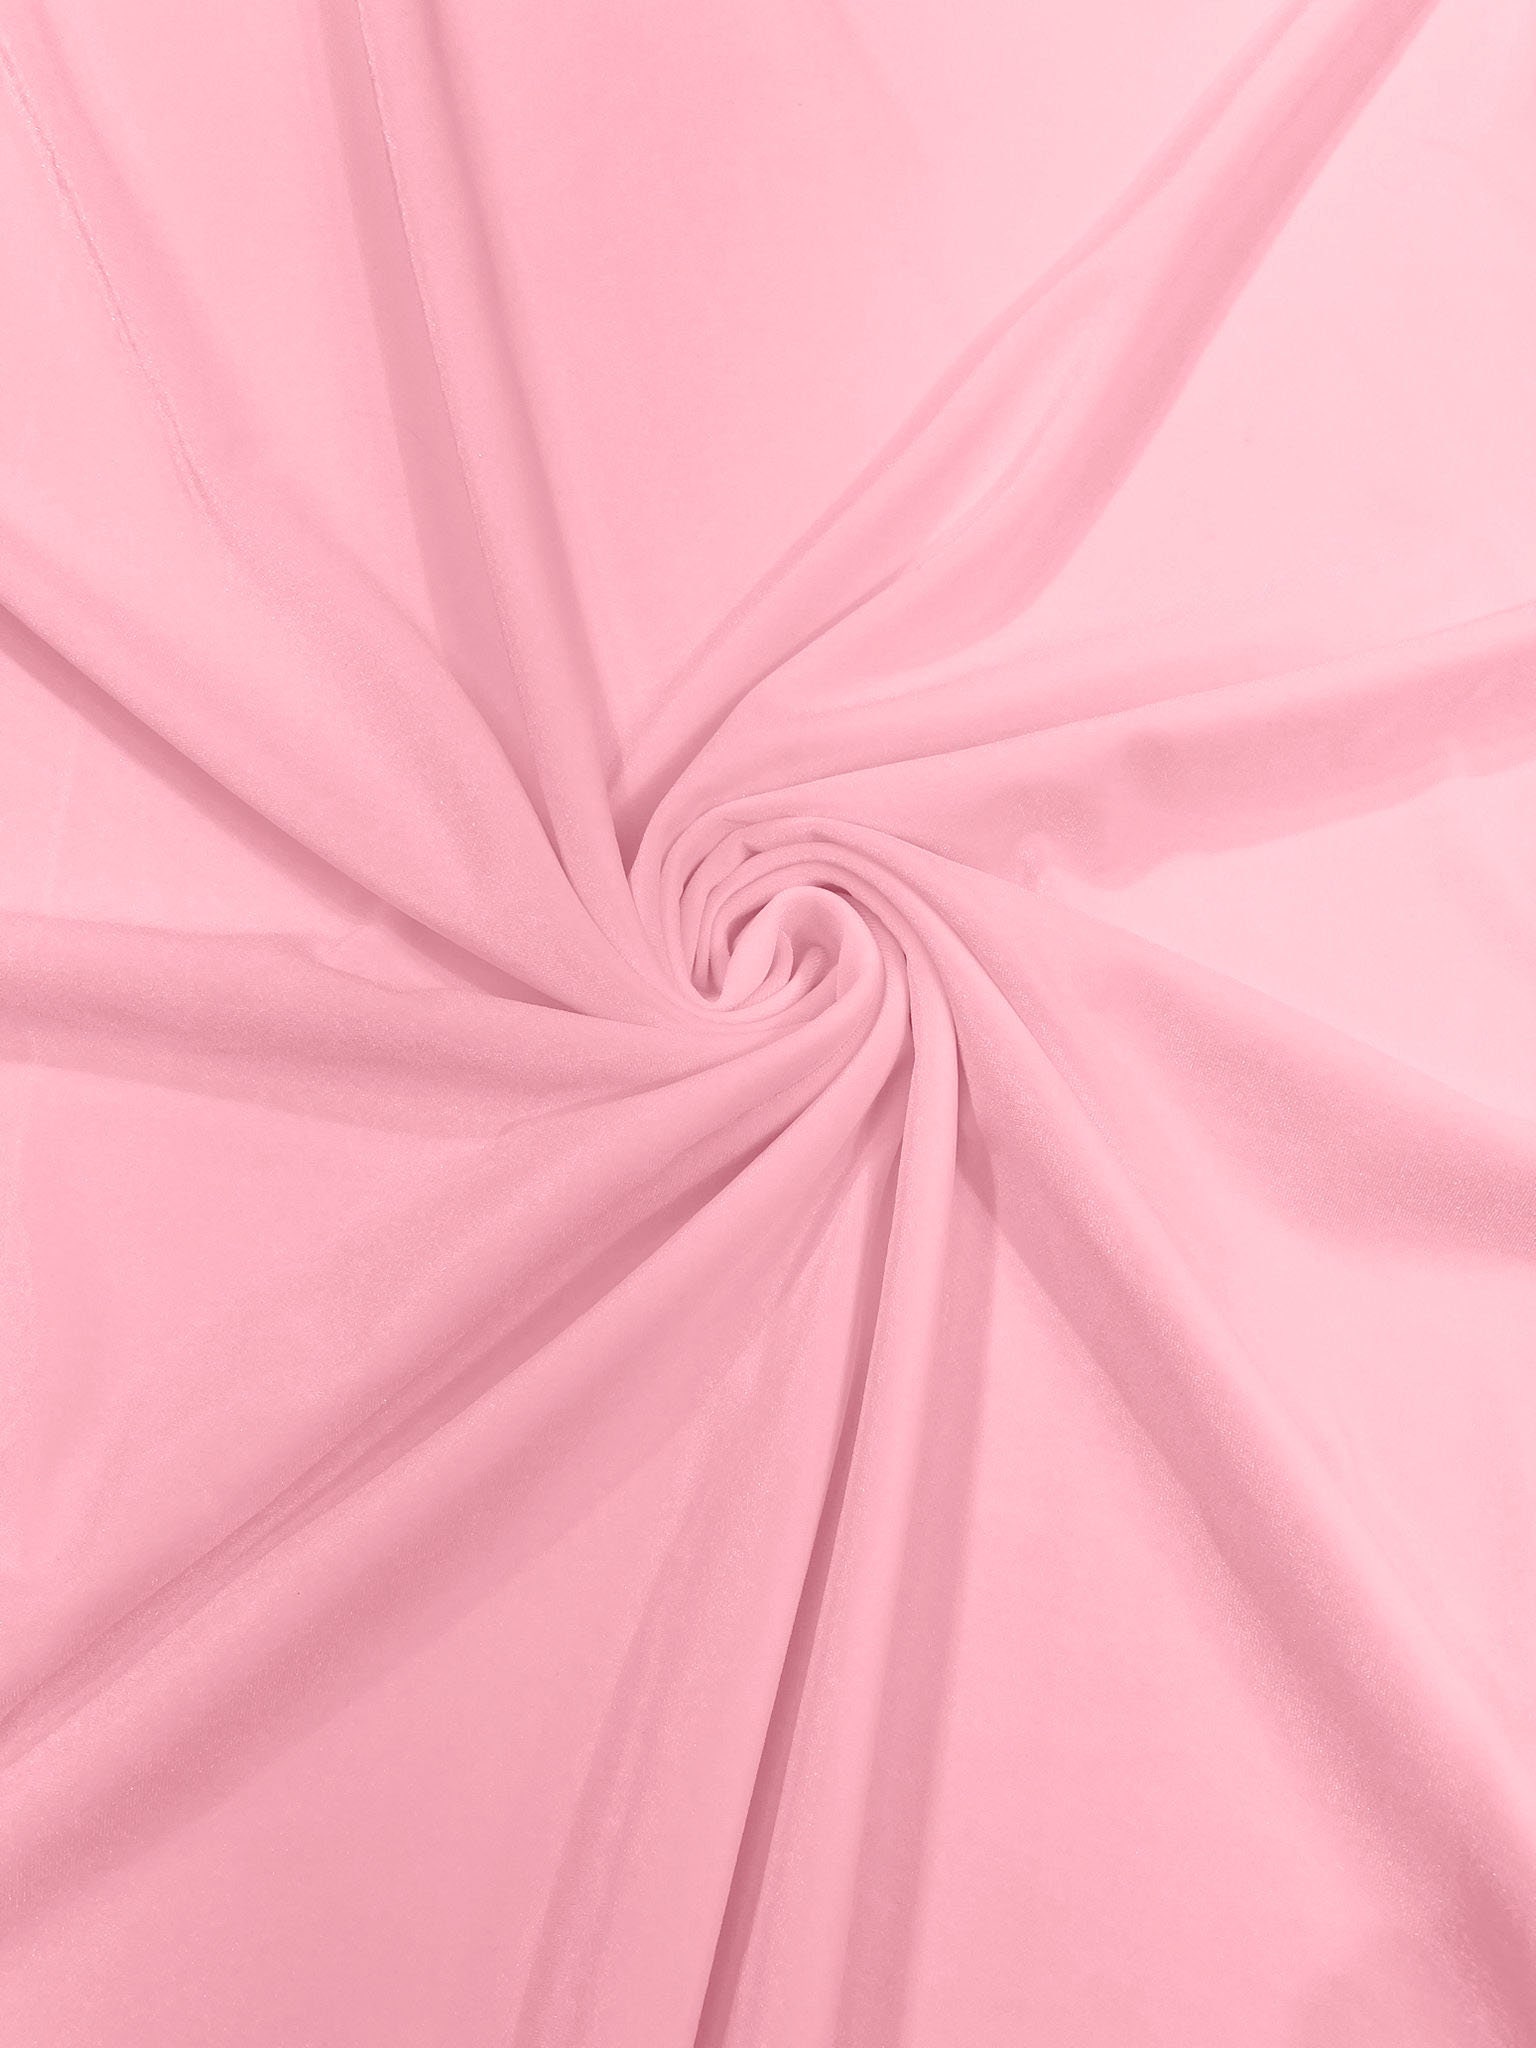 Light Pink Cotton Velvet by the Yard, 54 Inch Wide Velvet